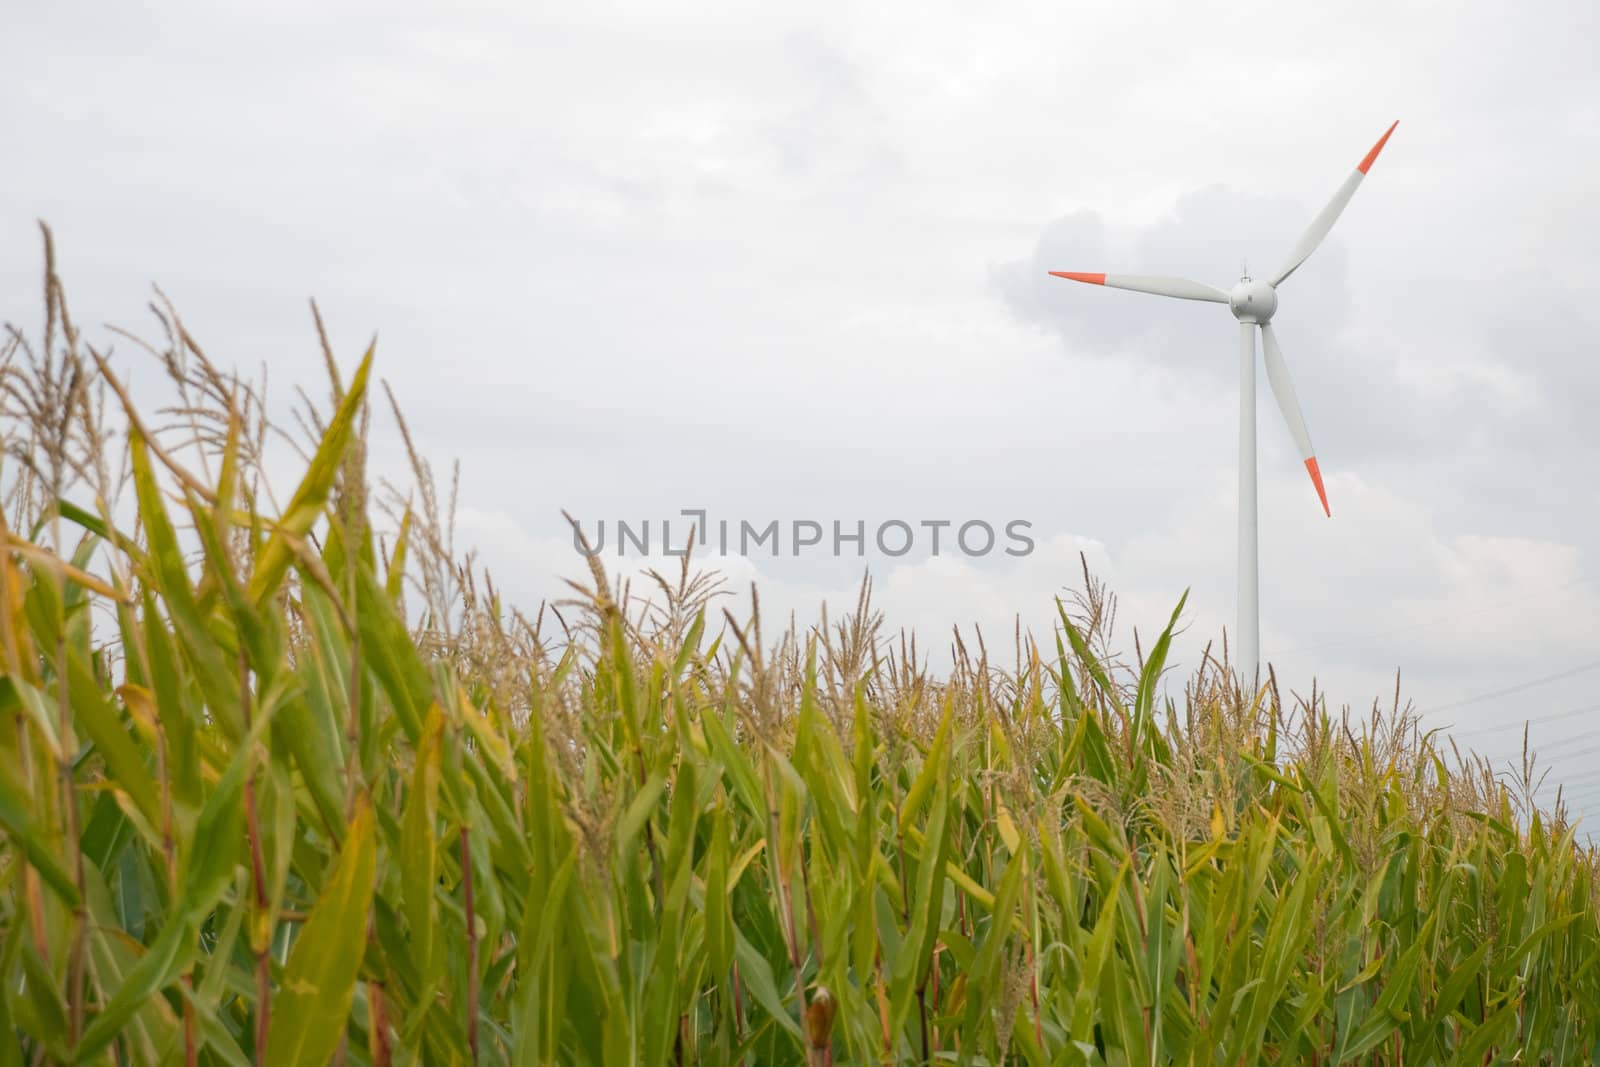 A wind turbine against a overcast sky